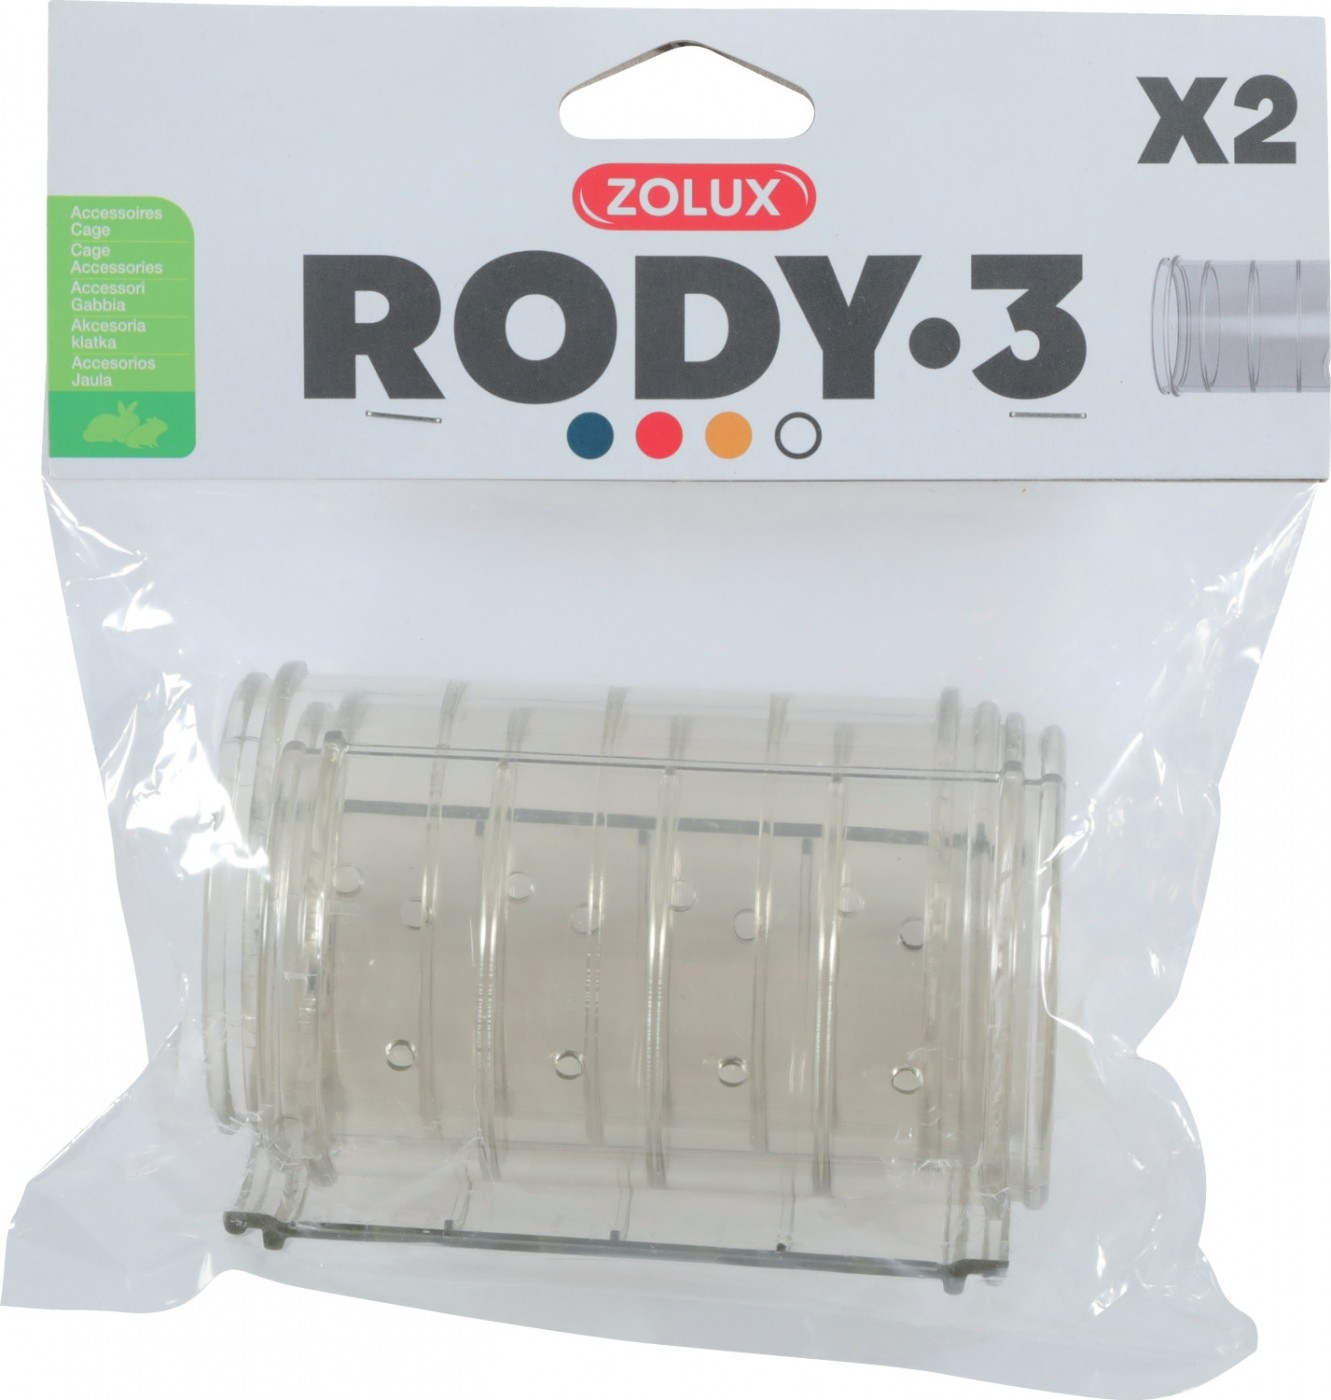 Pakket met 2 rechte tubes voor Rody3 grijs transparant